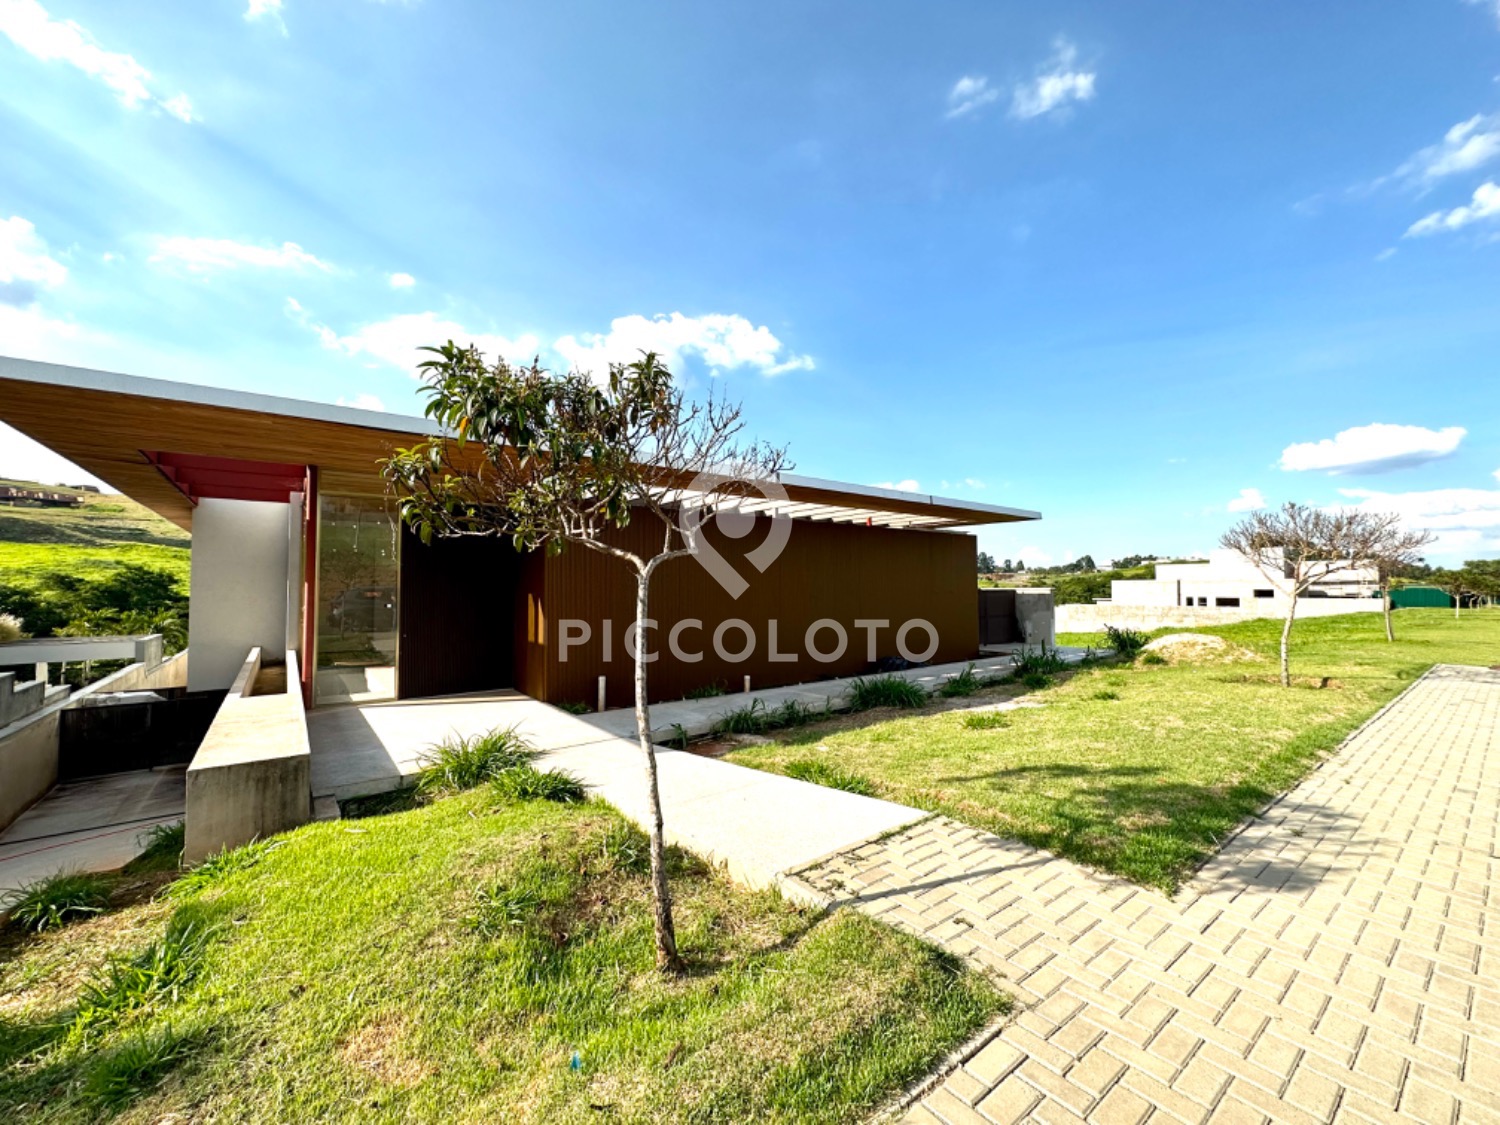 Piccoloto -Casa à venda no Loteamento Residencial Entre Verdes (Sousas) em Campinas